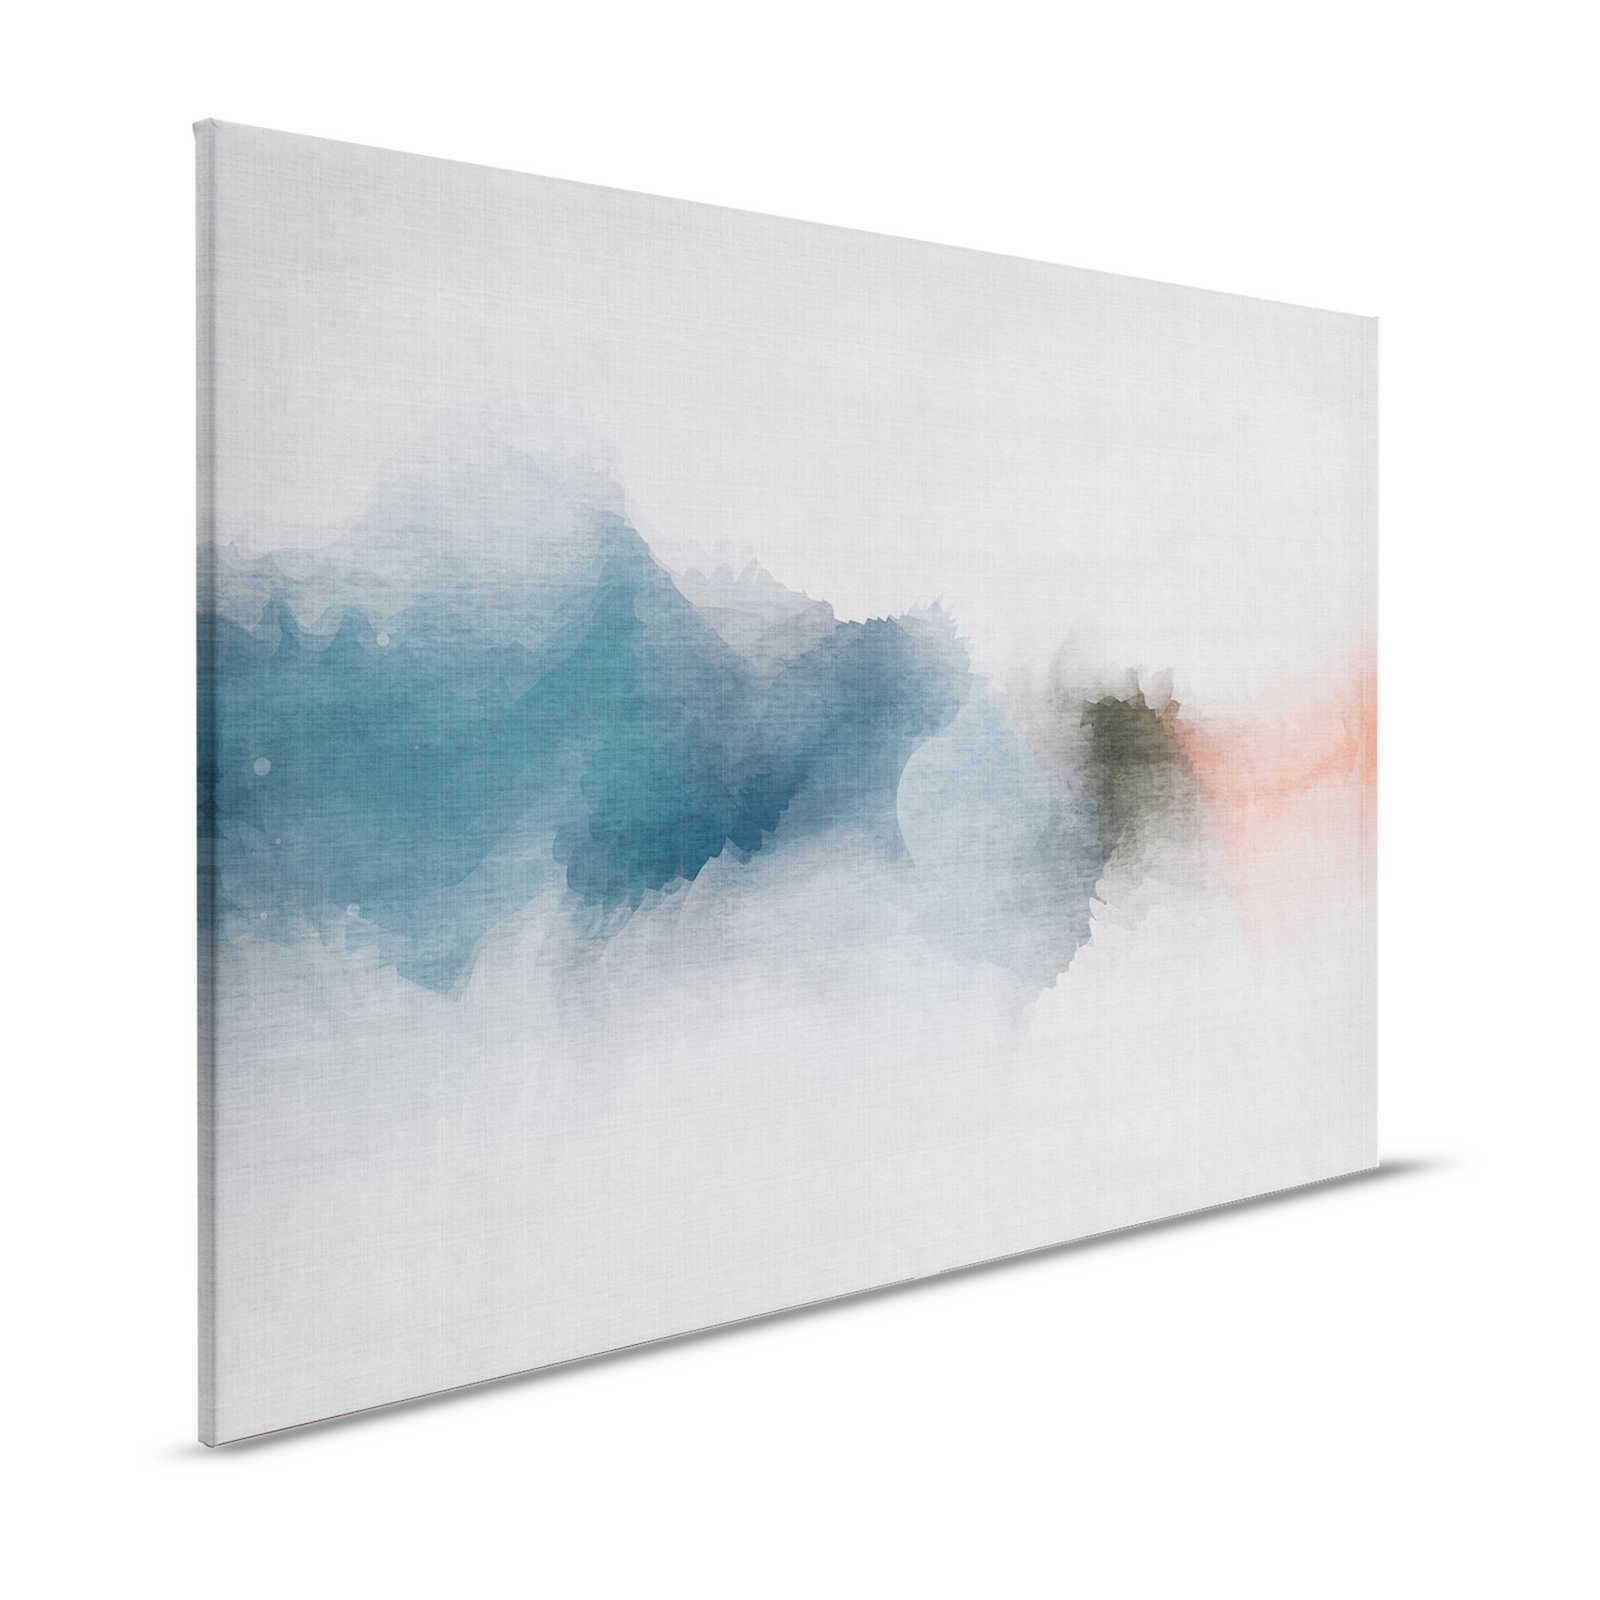 Daydream 1 - Impresión minimalista en lienzo estilo acuarela - aspecto lino natural - 1,20 m x 0,80 m
